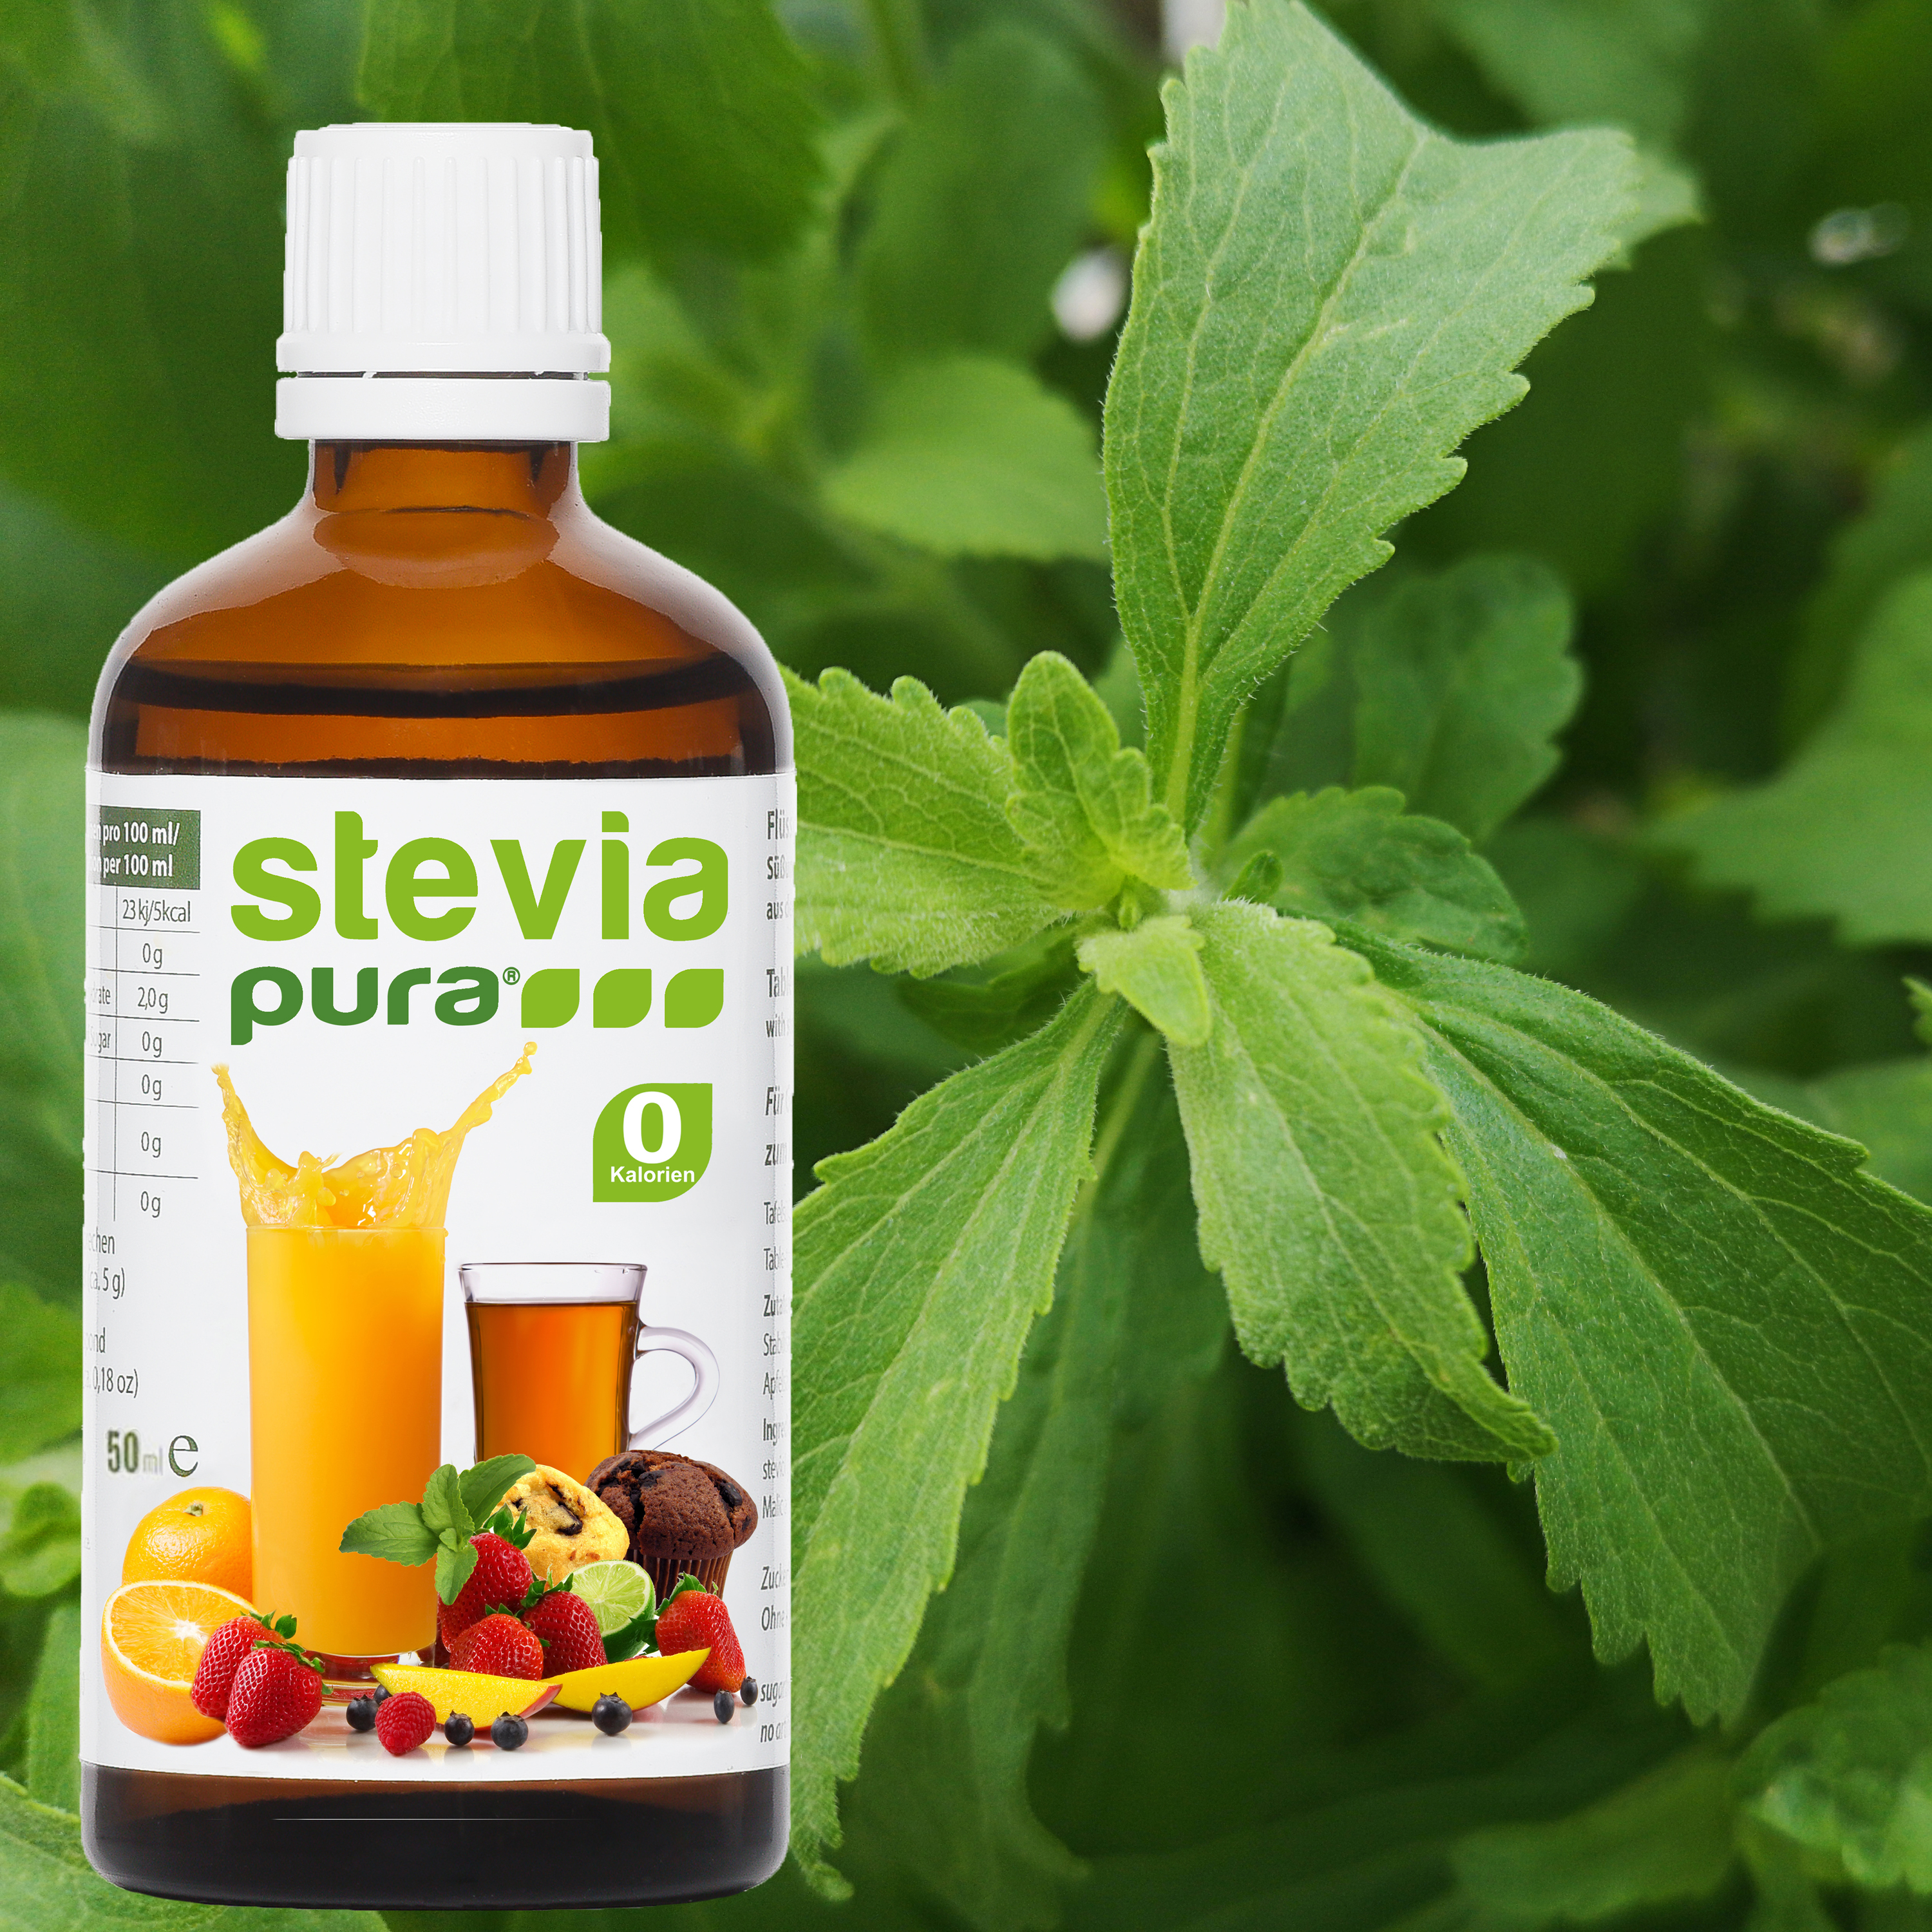 Informatie over Stevia Vloeibare Zoetstof van natuurlijke oorsprong uit de Stevia plant.